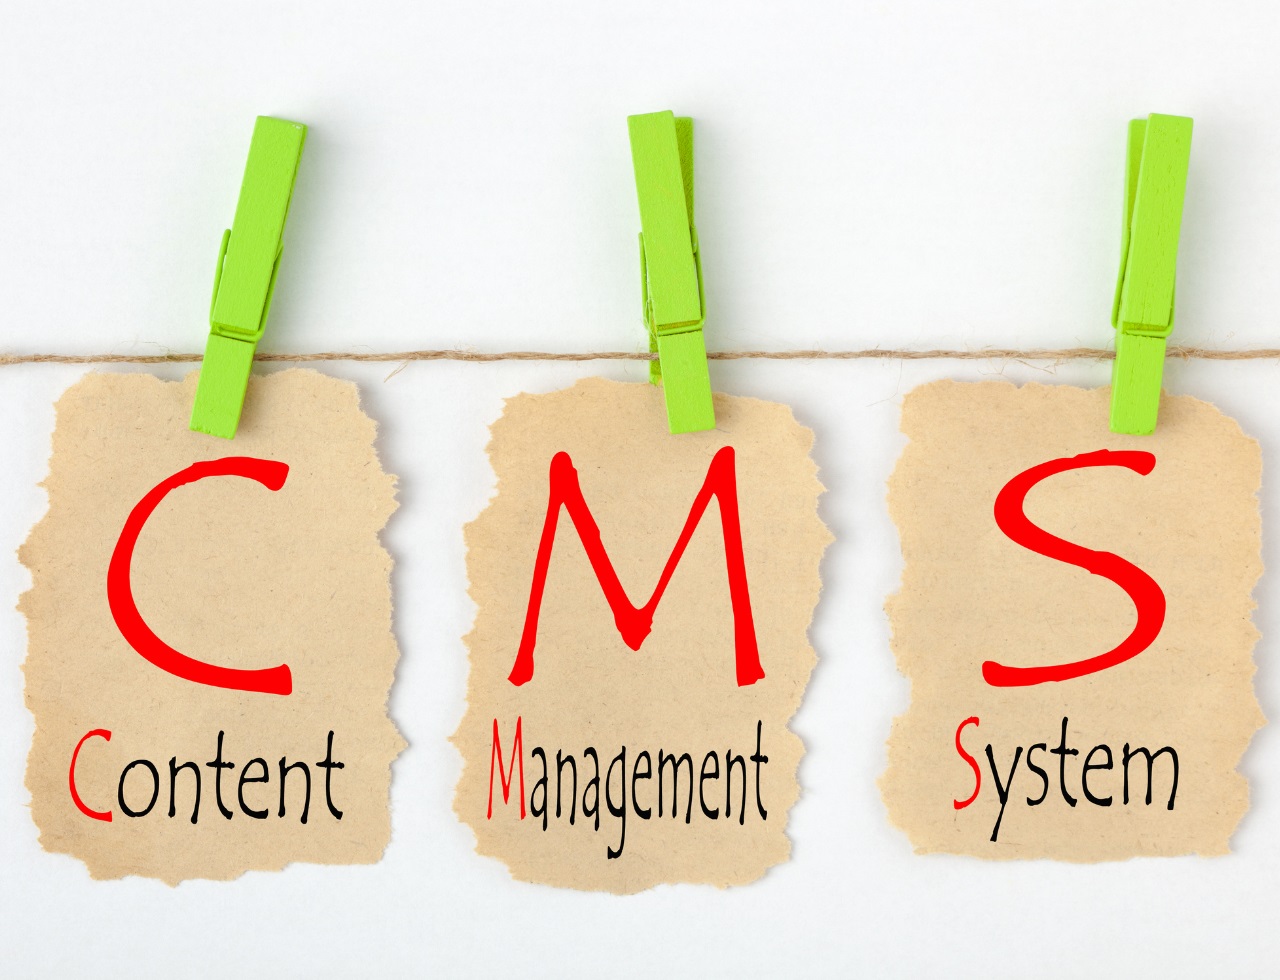 Un CMS (Content Management System) est un système de gestion de contenu